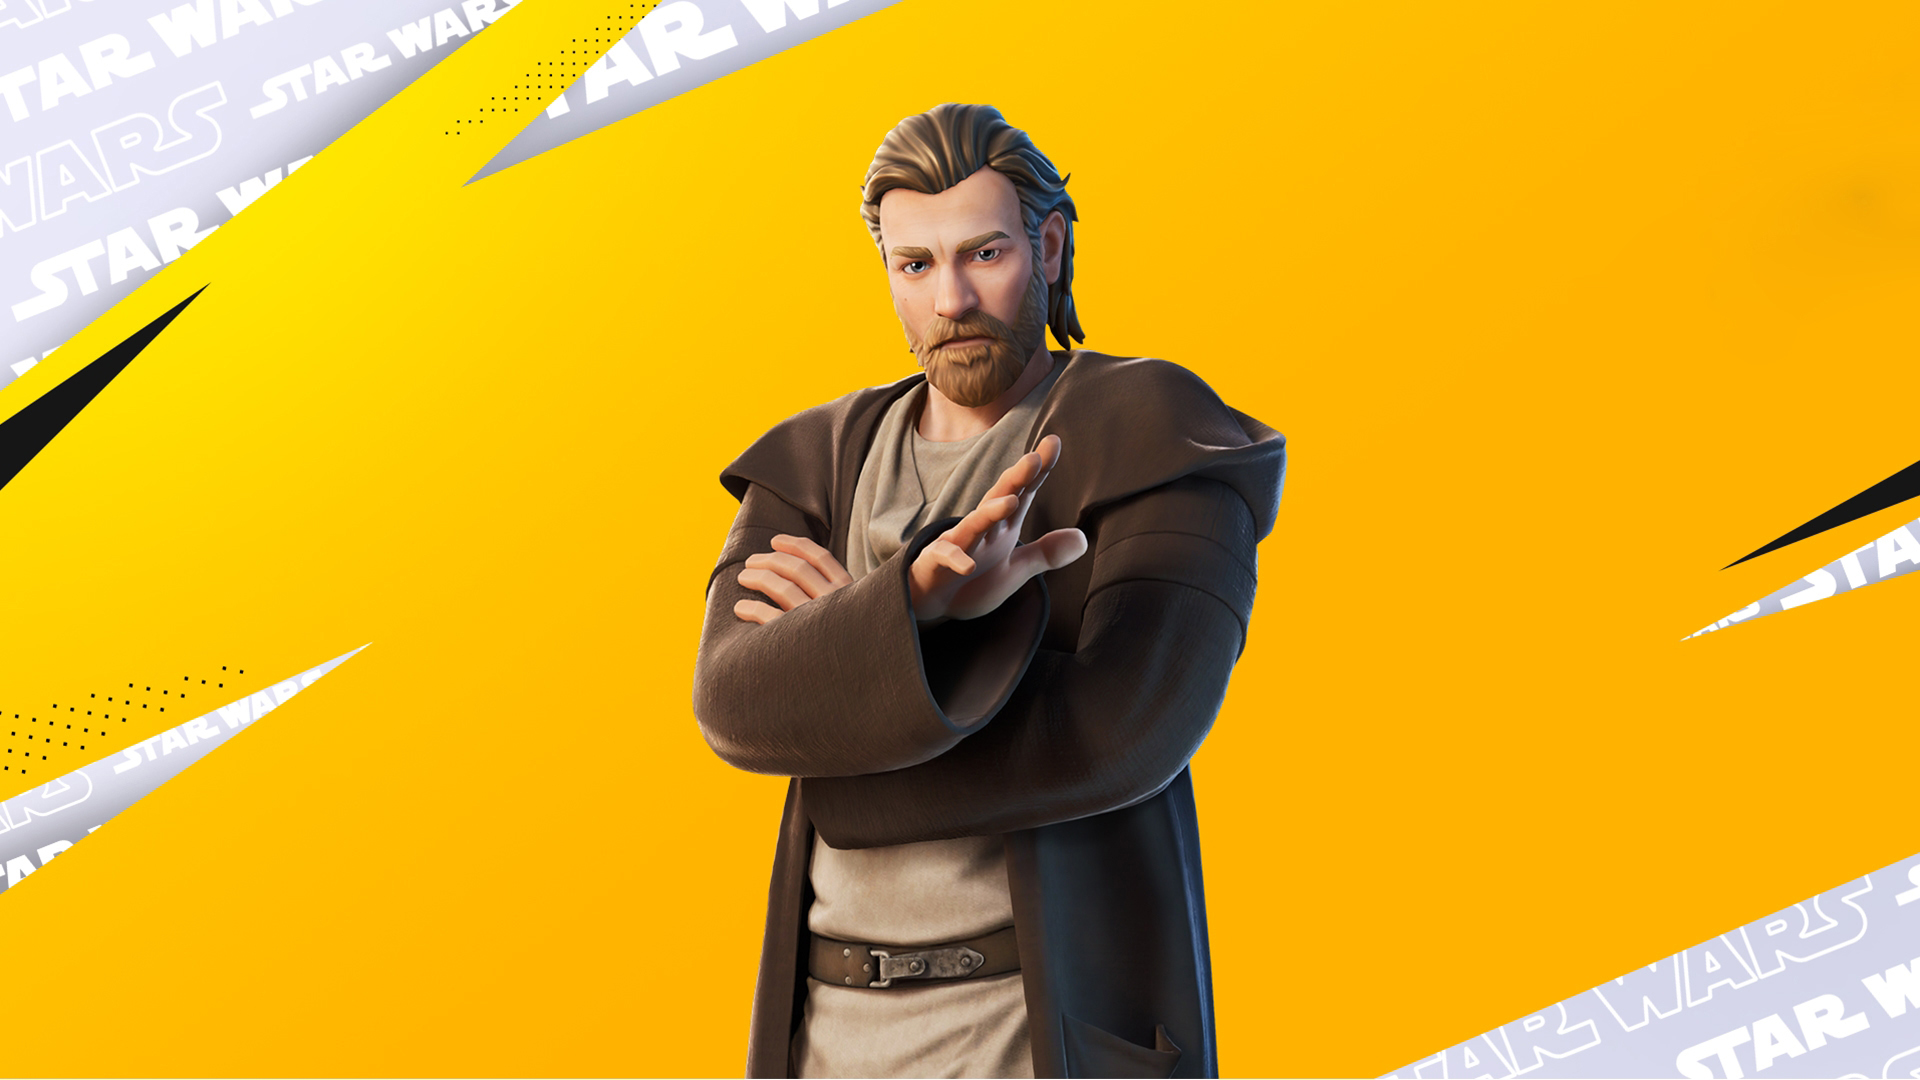 Obi-Wan Kenobi Fortnite Skin 2K Fortnite